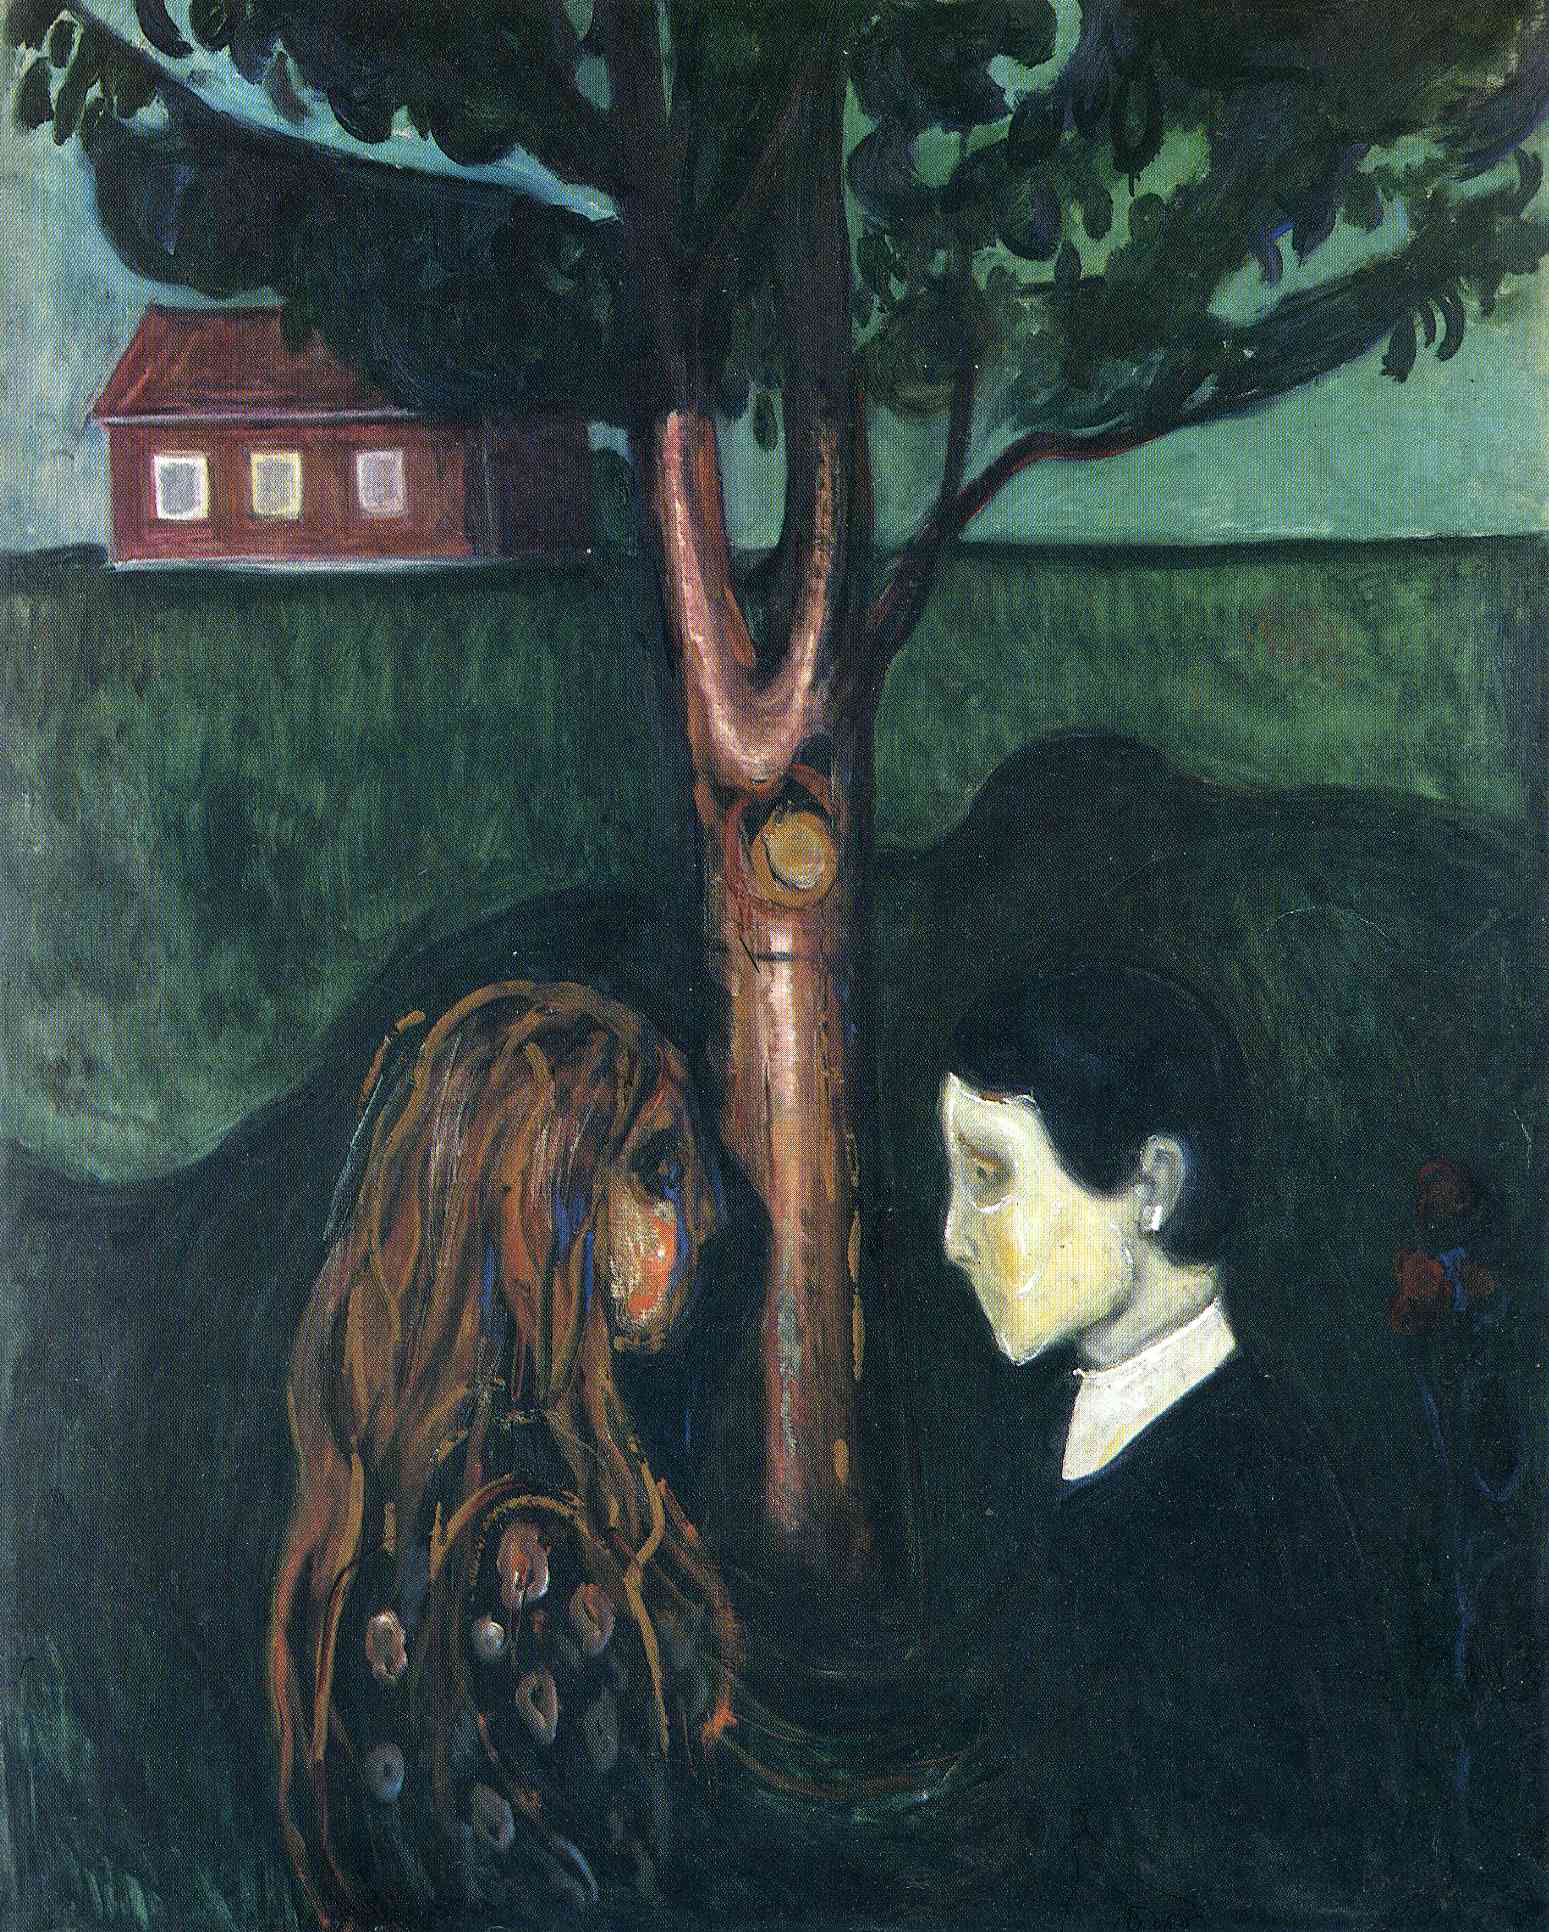 Les yeux dans Les yeux by Edvard Munch - 1894 - 136 x 110 cm Le Musée Munch